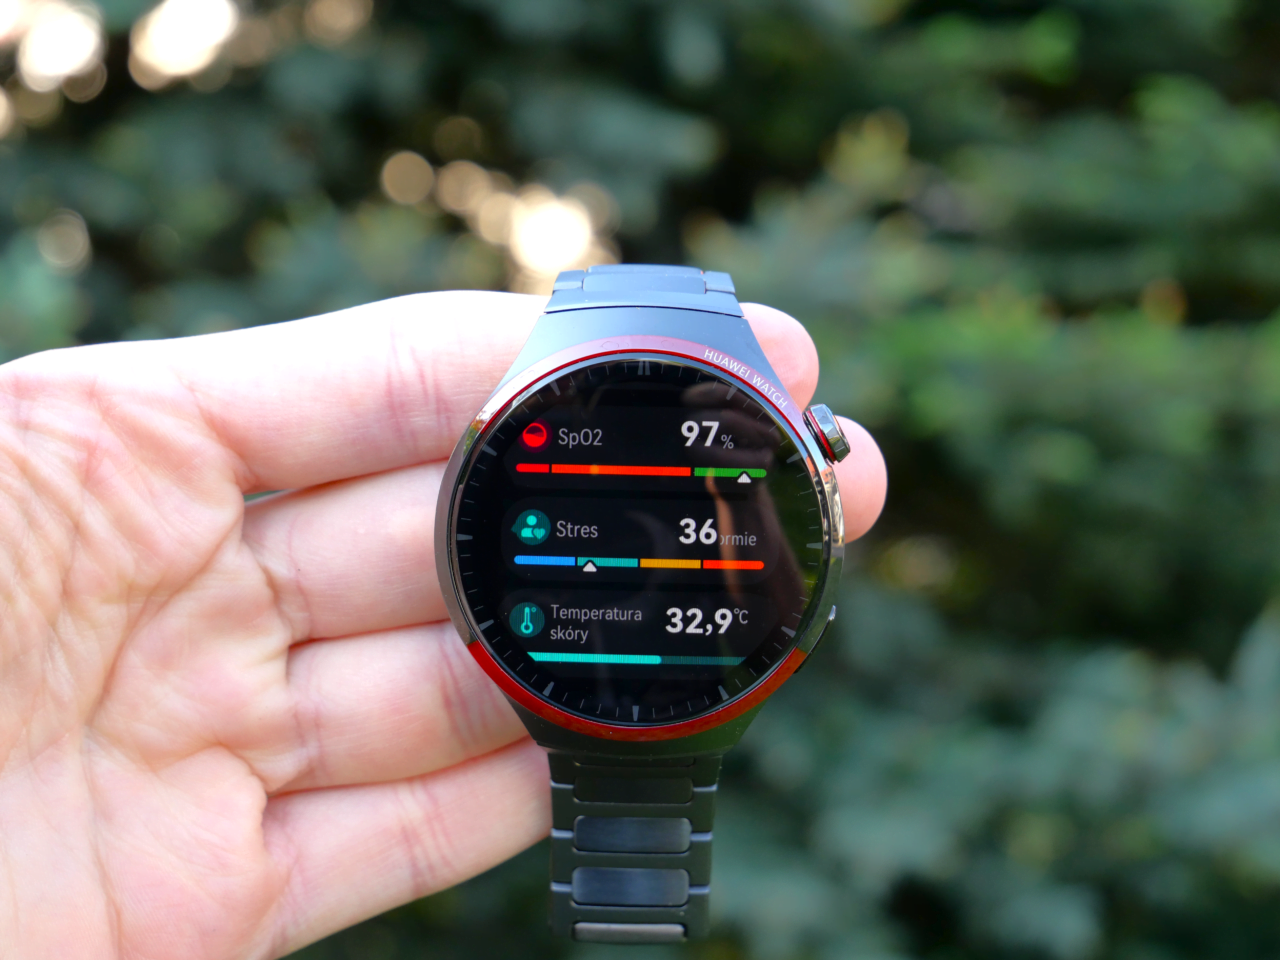 Smartwatch trzymany w dłoni, wyświetlający dane zdrowotne: poziom SpO2 97%, stres 36, temperatura skóry 32,9°C.